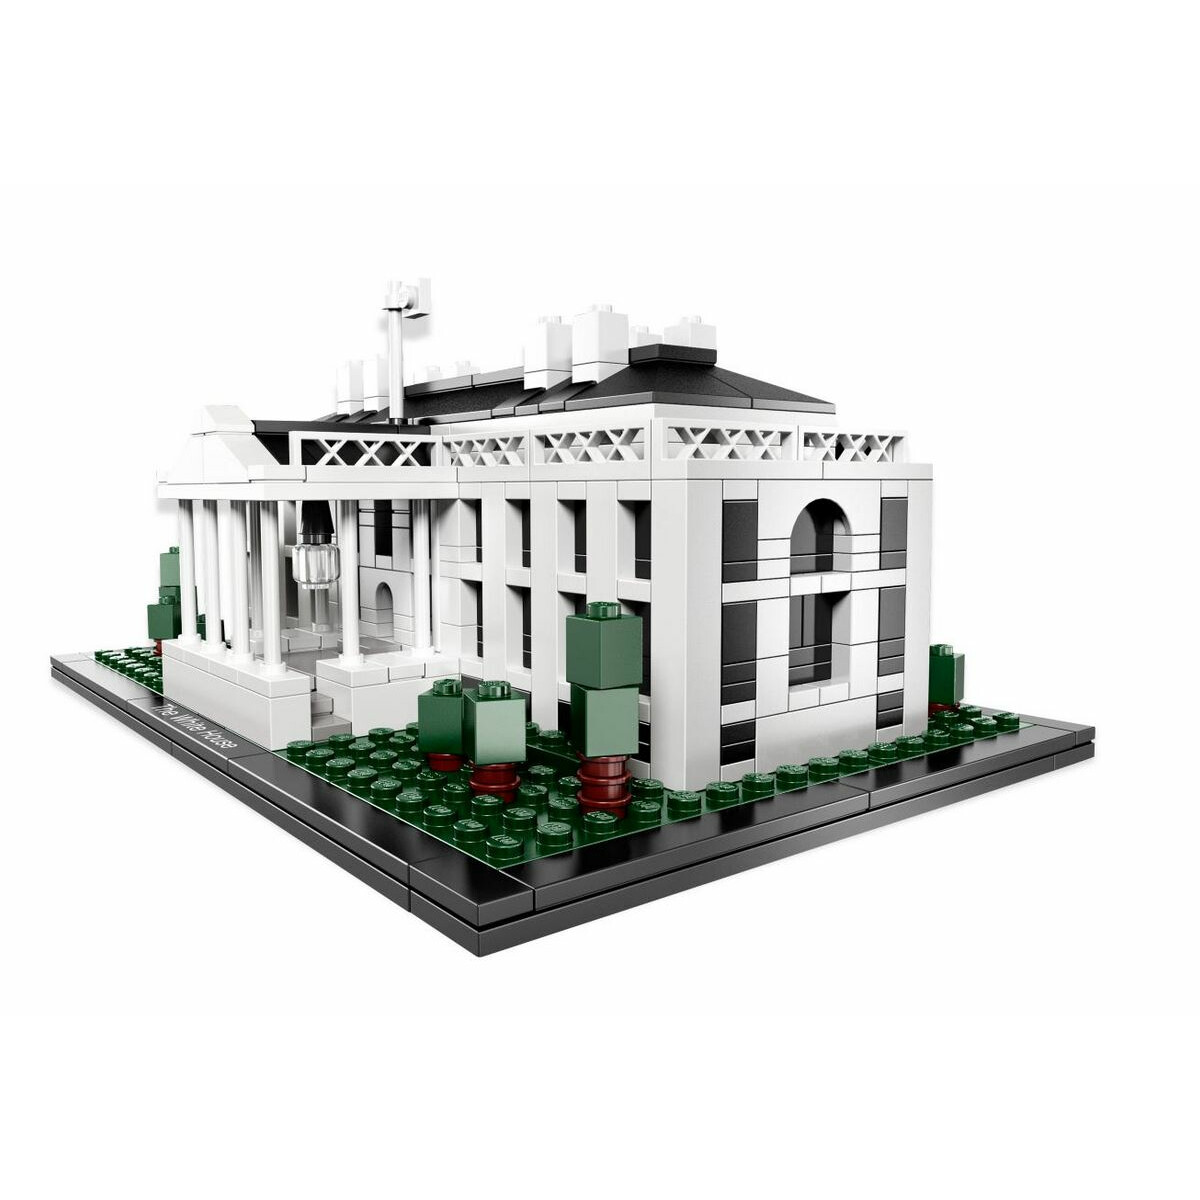 LEGO® Architecture NEU & OVP ! 21006 Das Weiße Haus  & 0.-€ Versand